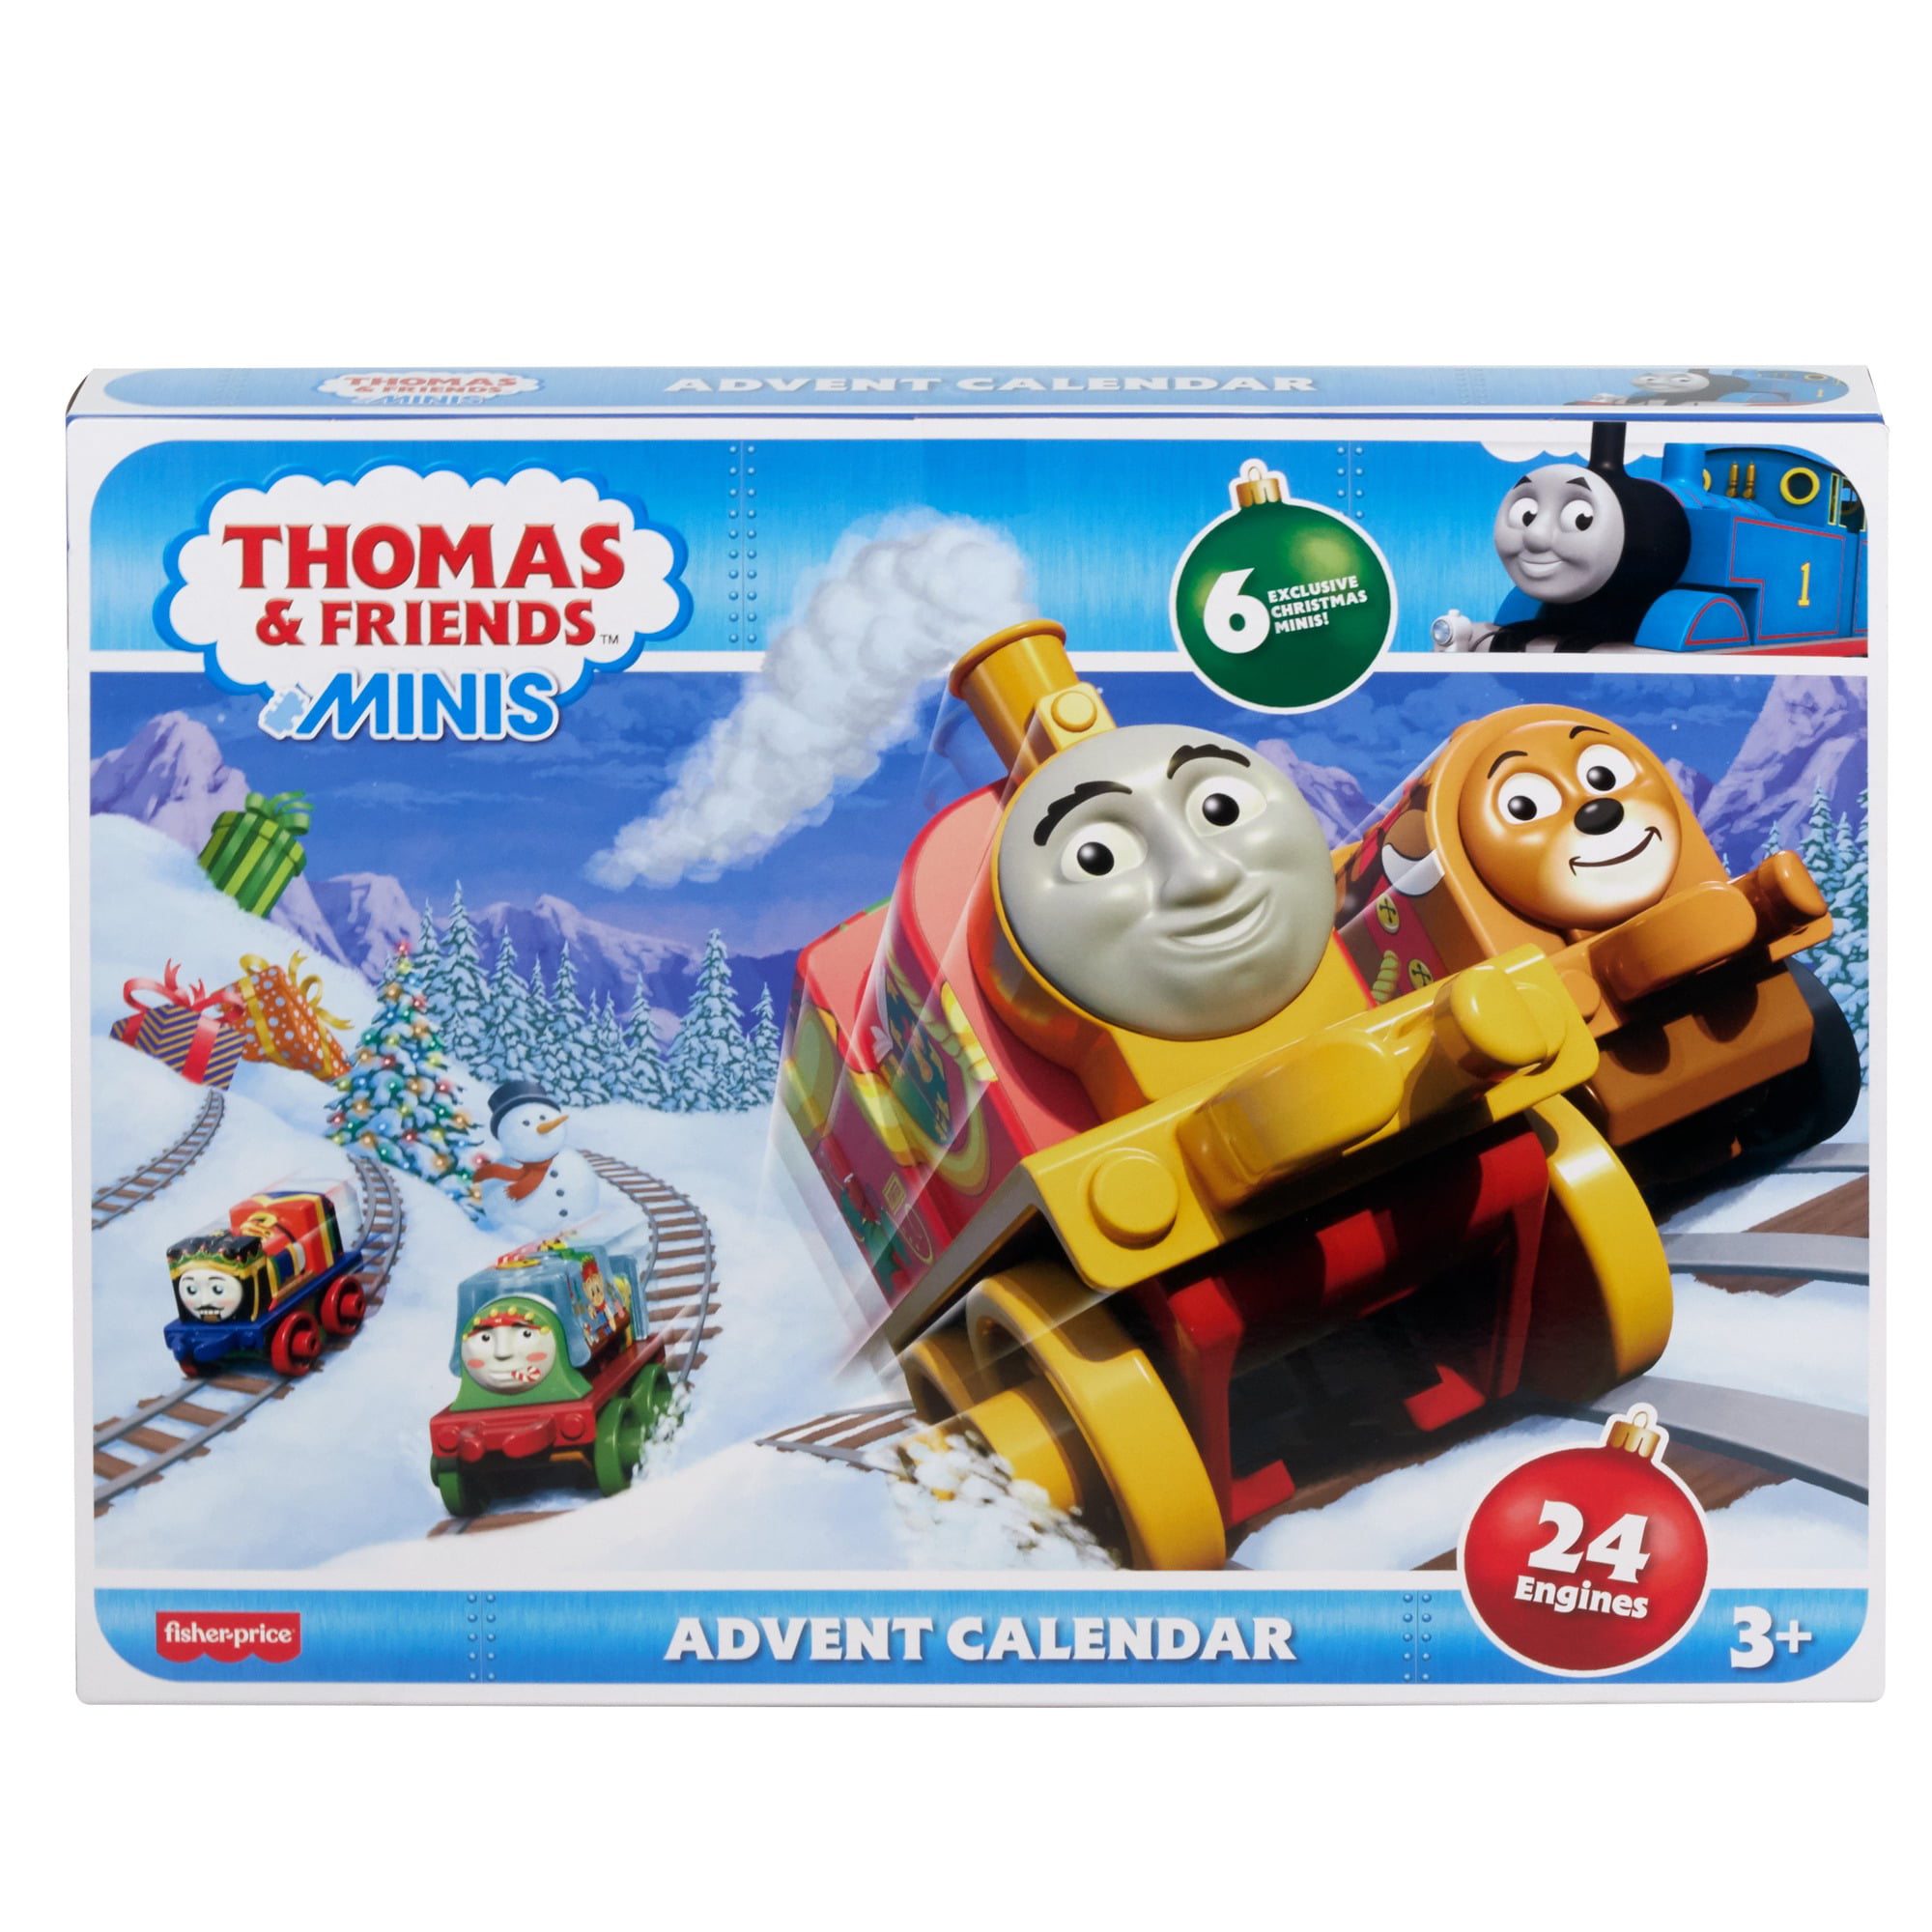 Thomas & Friends MINIS Train Advent Calendar